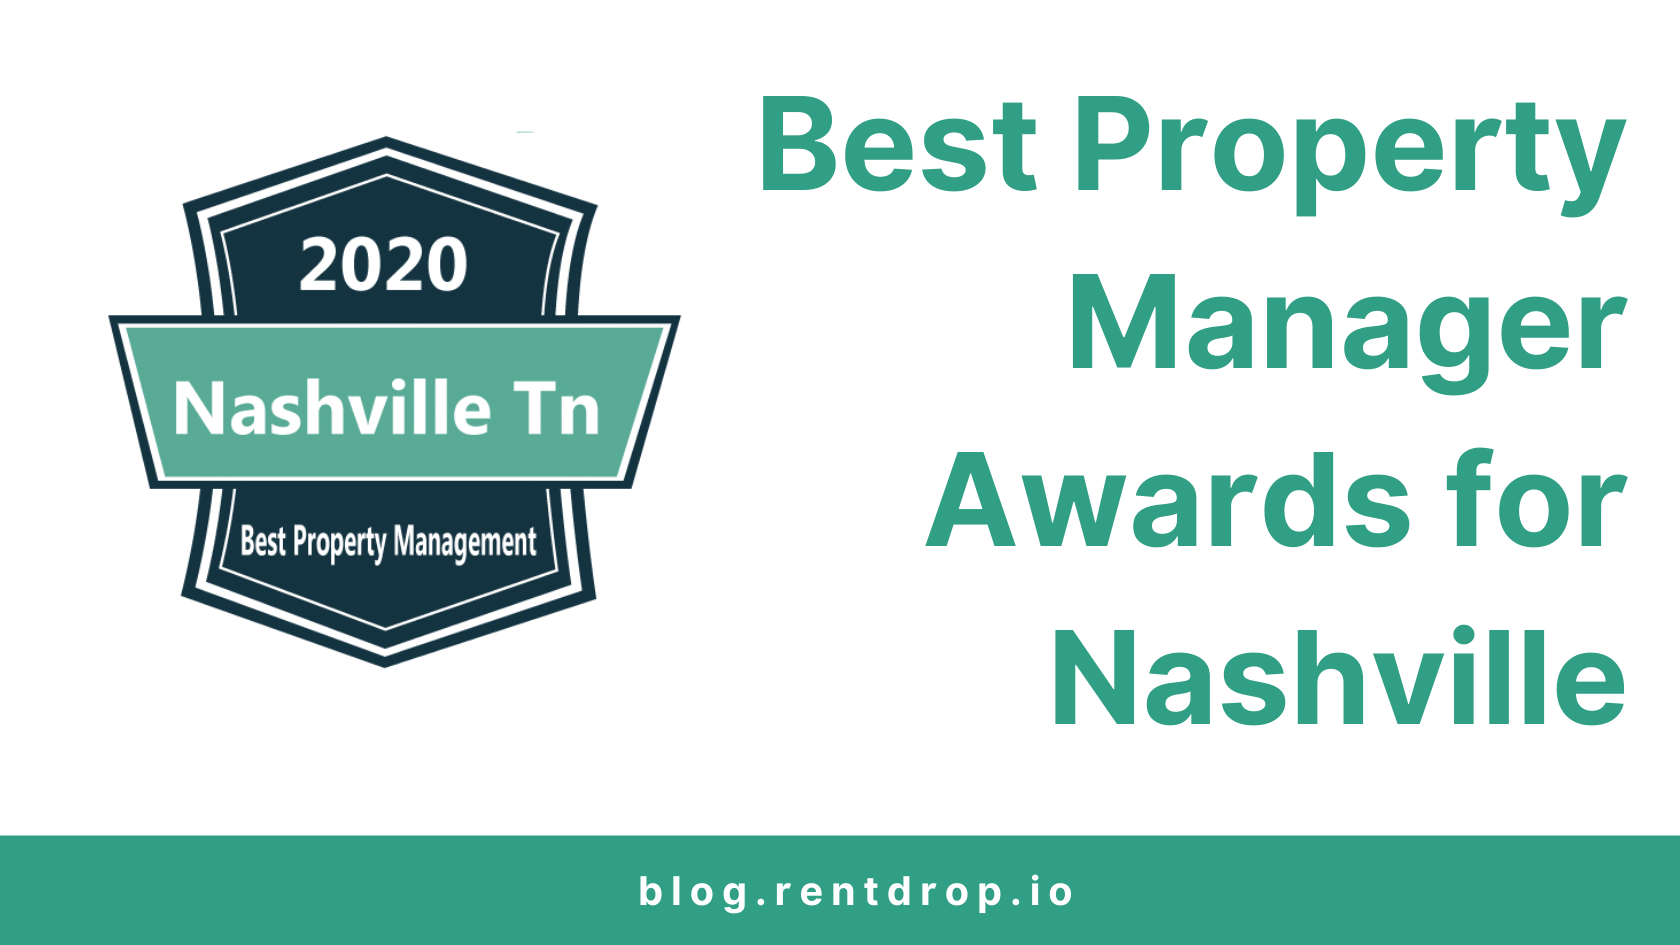 best property manager award nashville